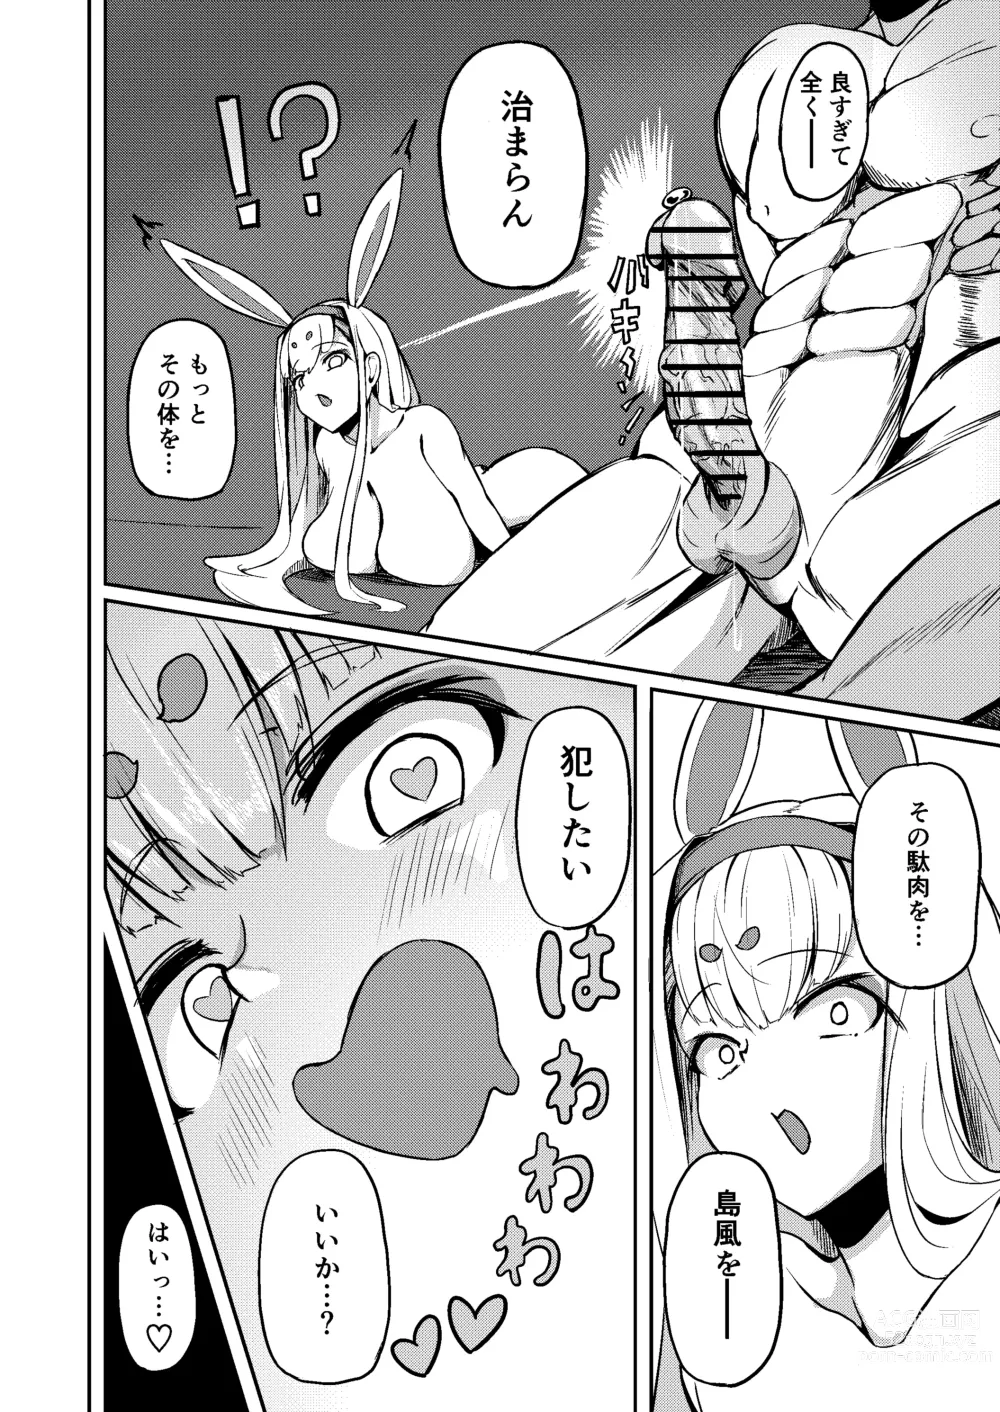 Page 21 of doujinshi Shimakaze?